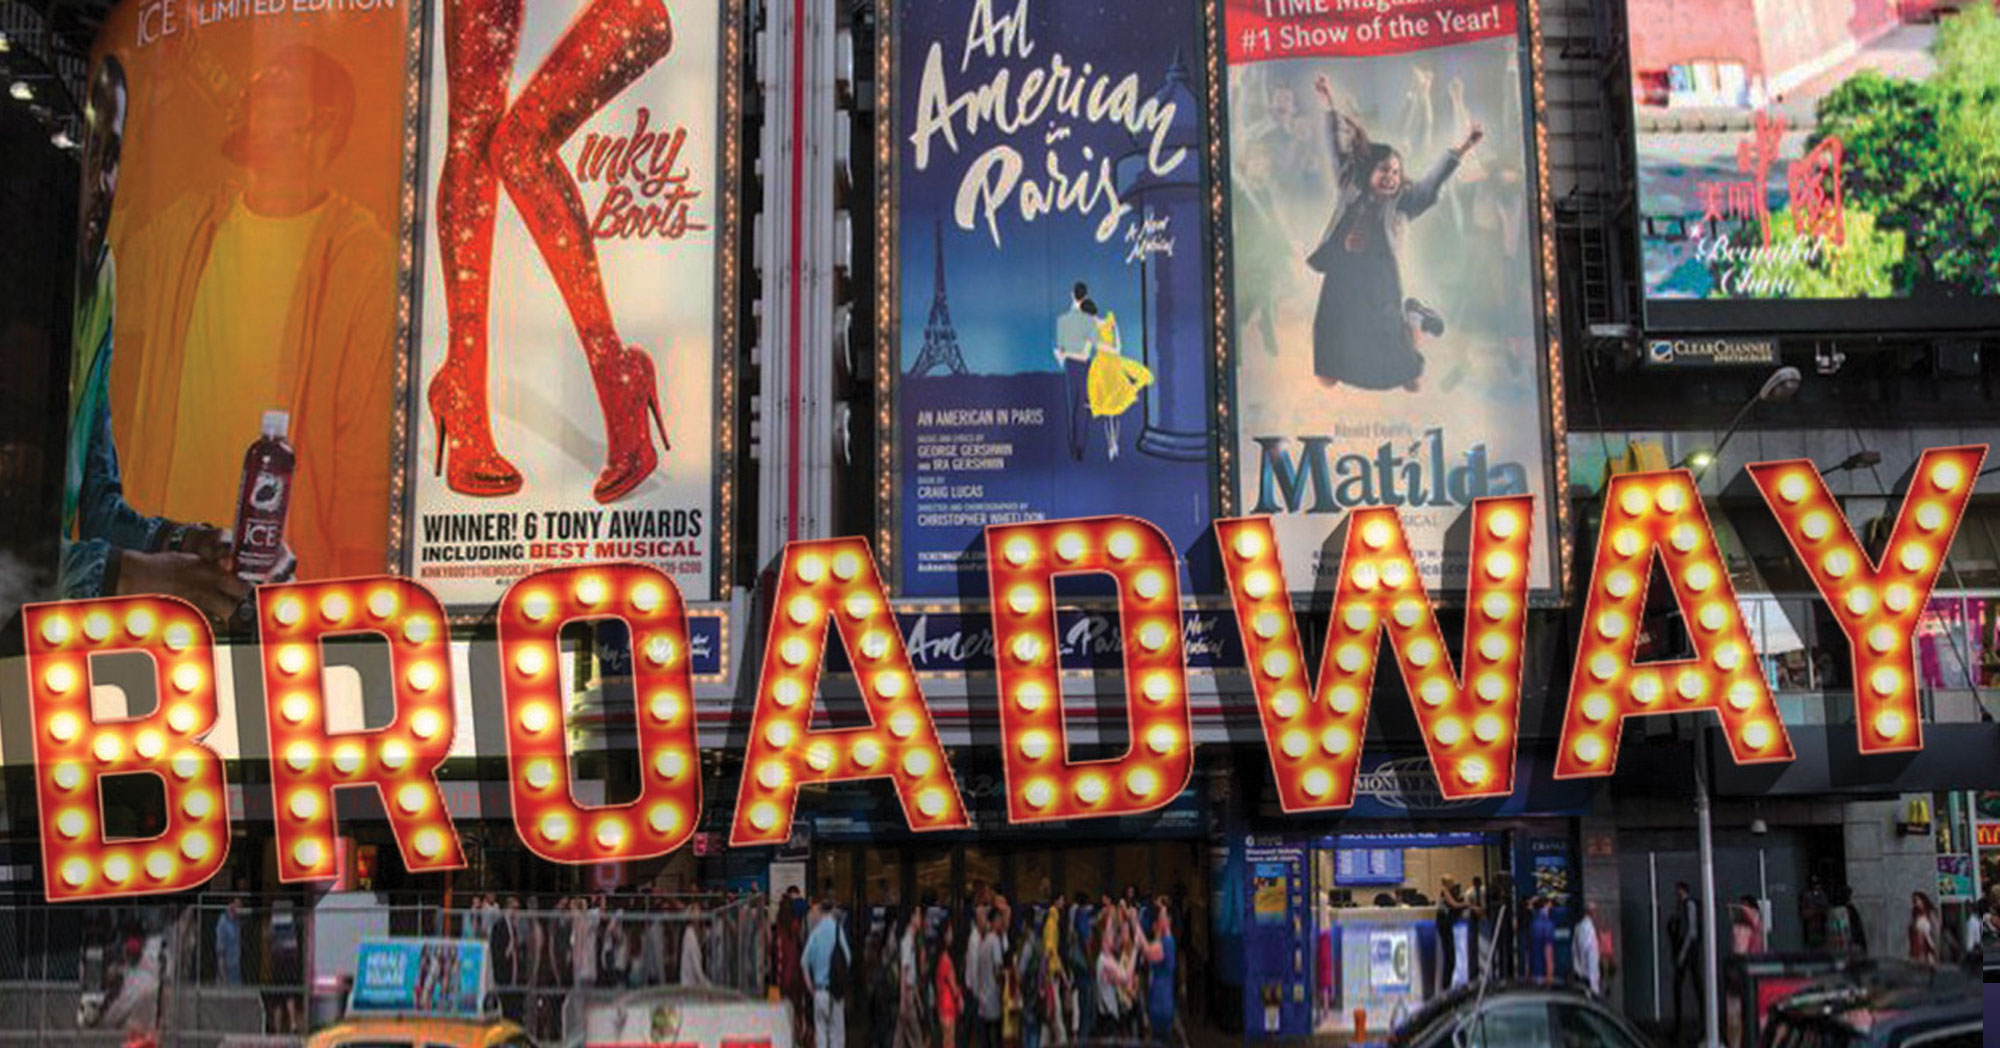 Broadway i teatri richiederanno vaccino e mascherine